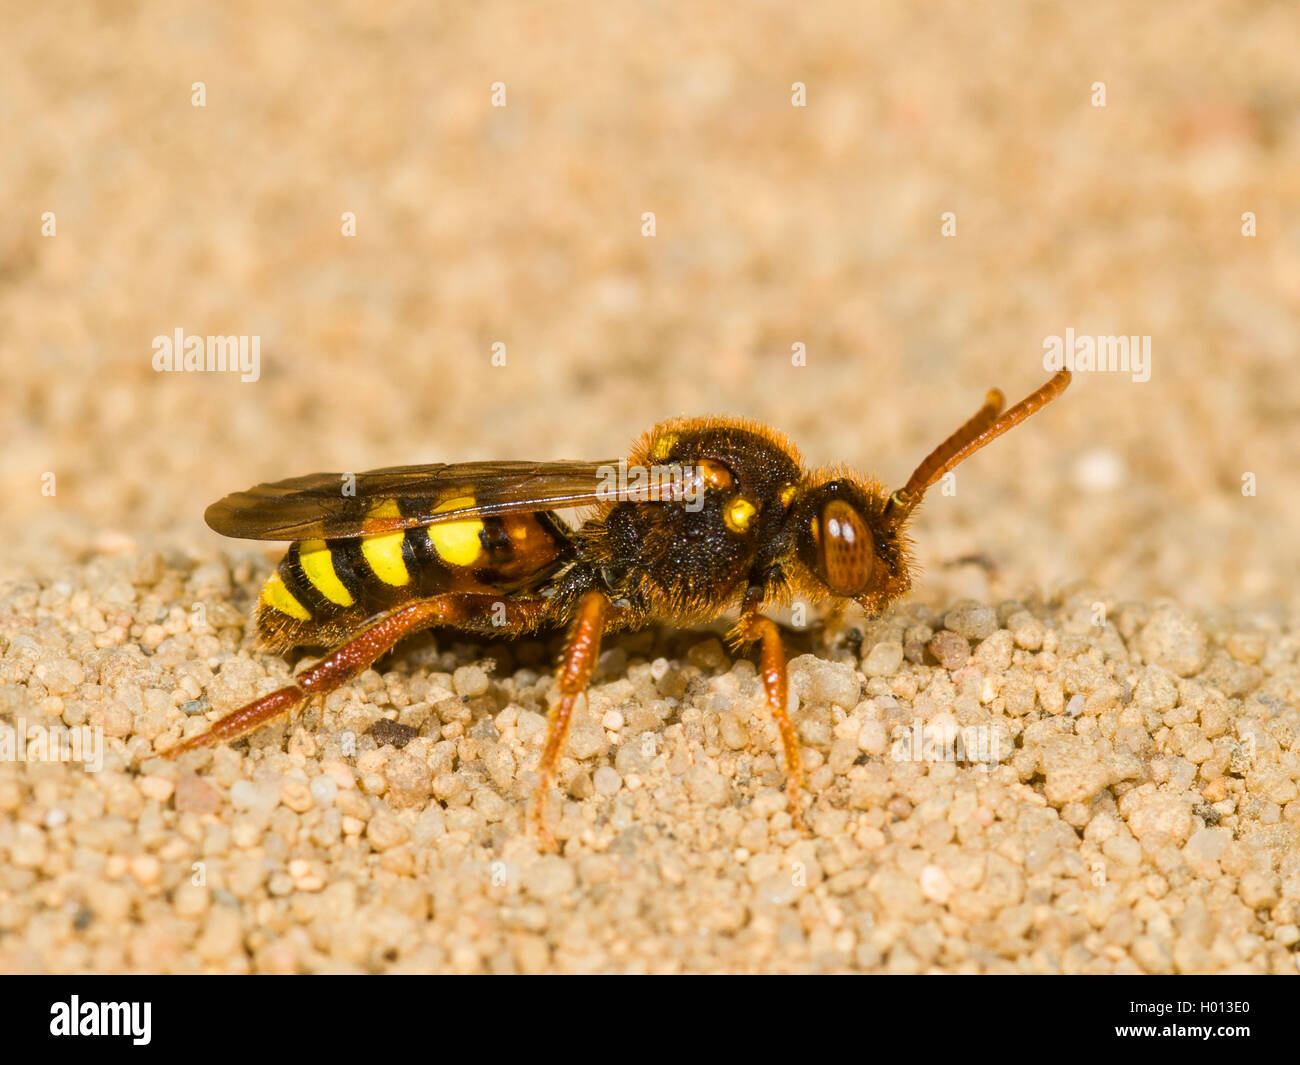 Lathbury's Nomad Bee (Nomada lathburiana), Female on sand, Germany Stock Photo